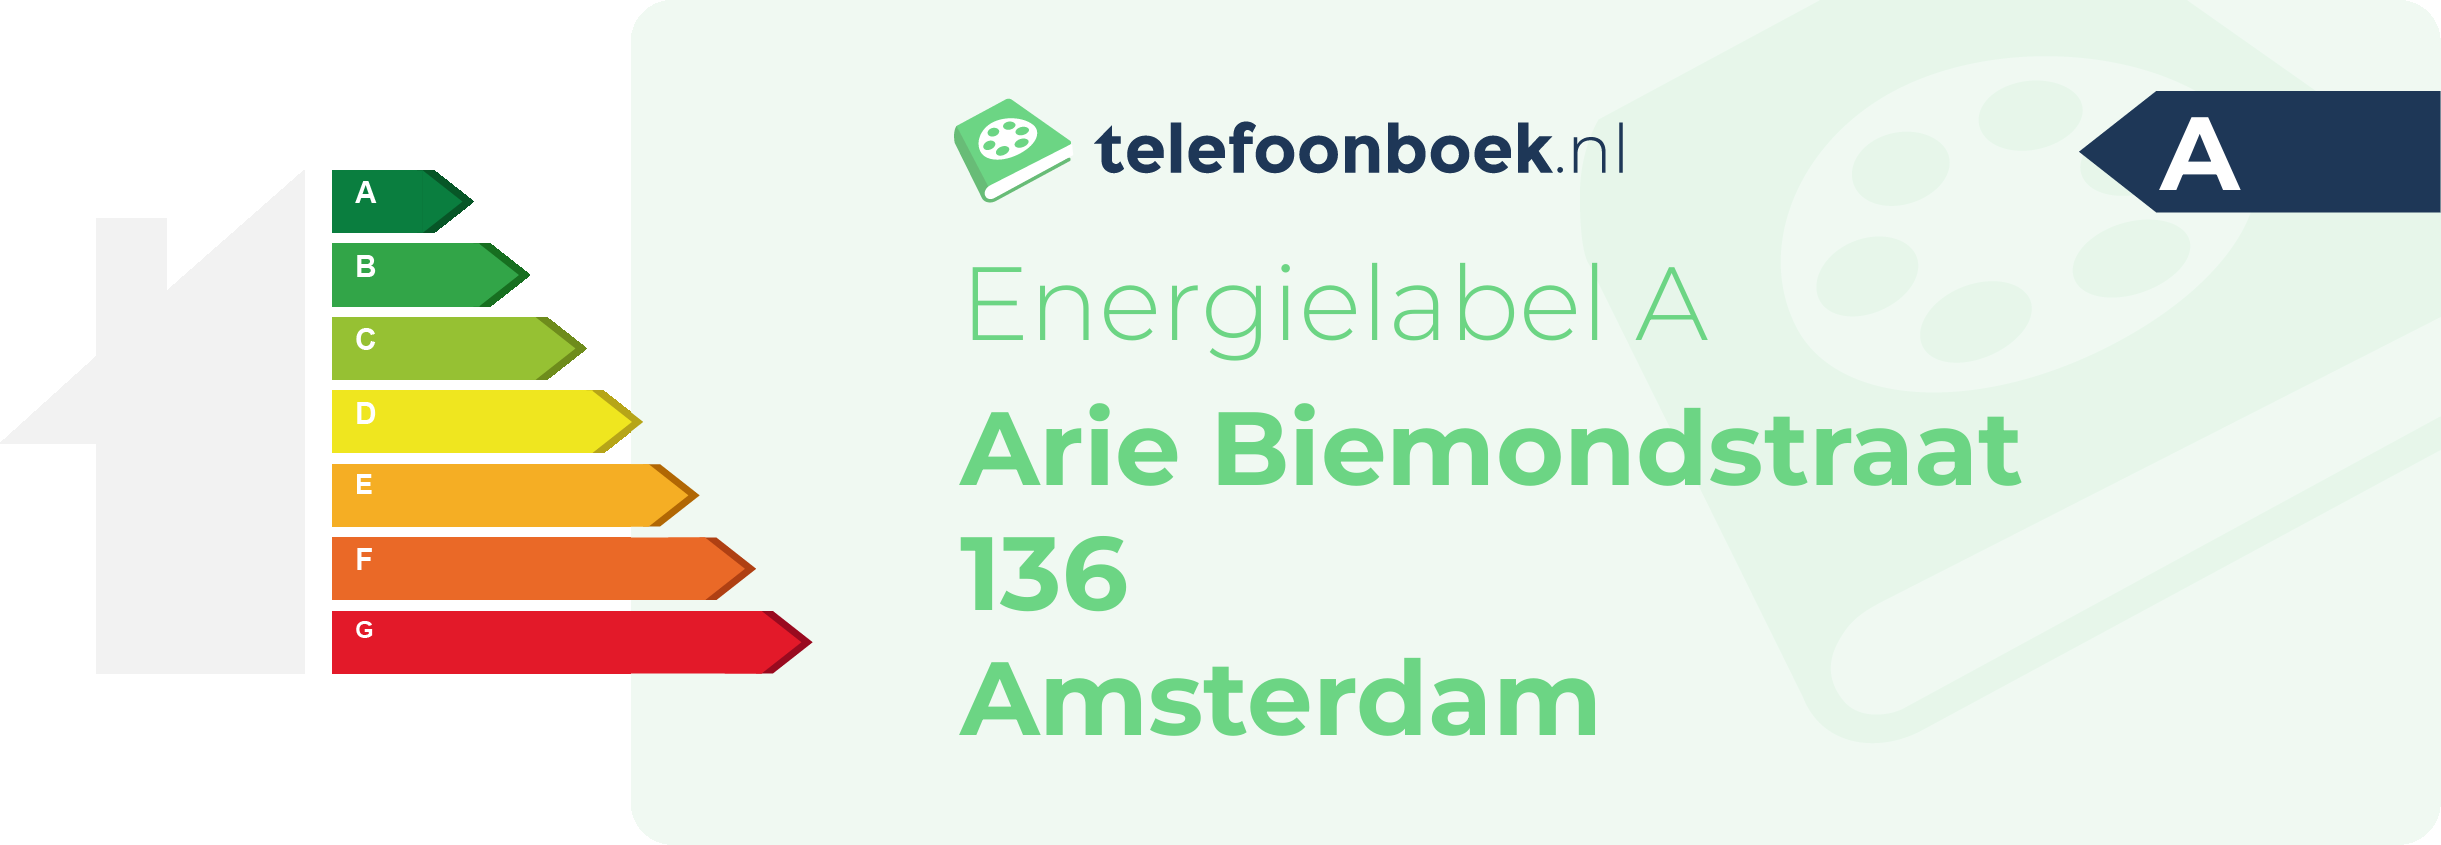 Energielabel Arie Biemondstraat 136 Amsterdam